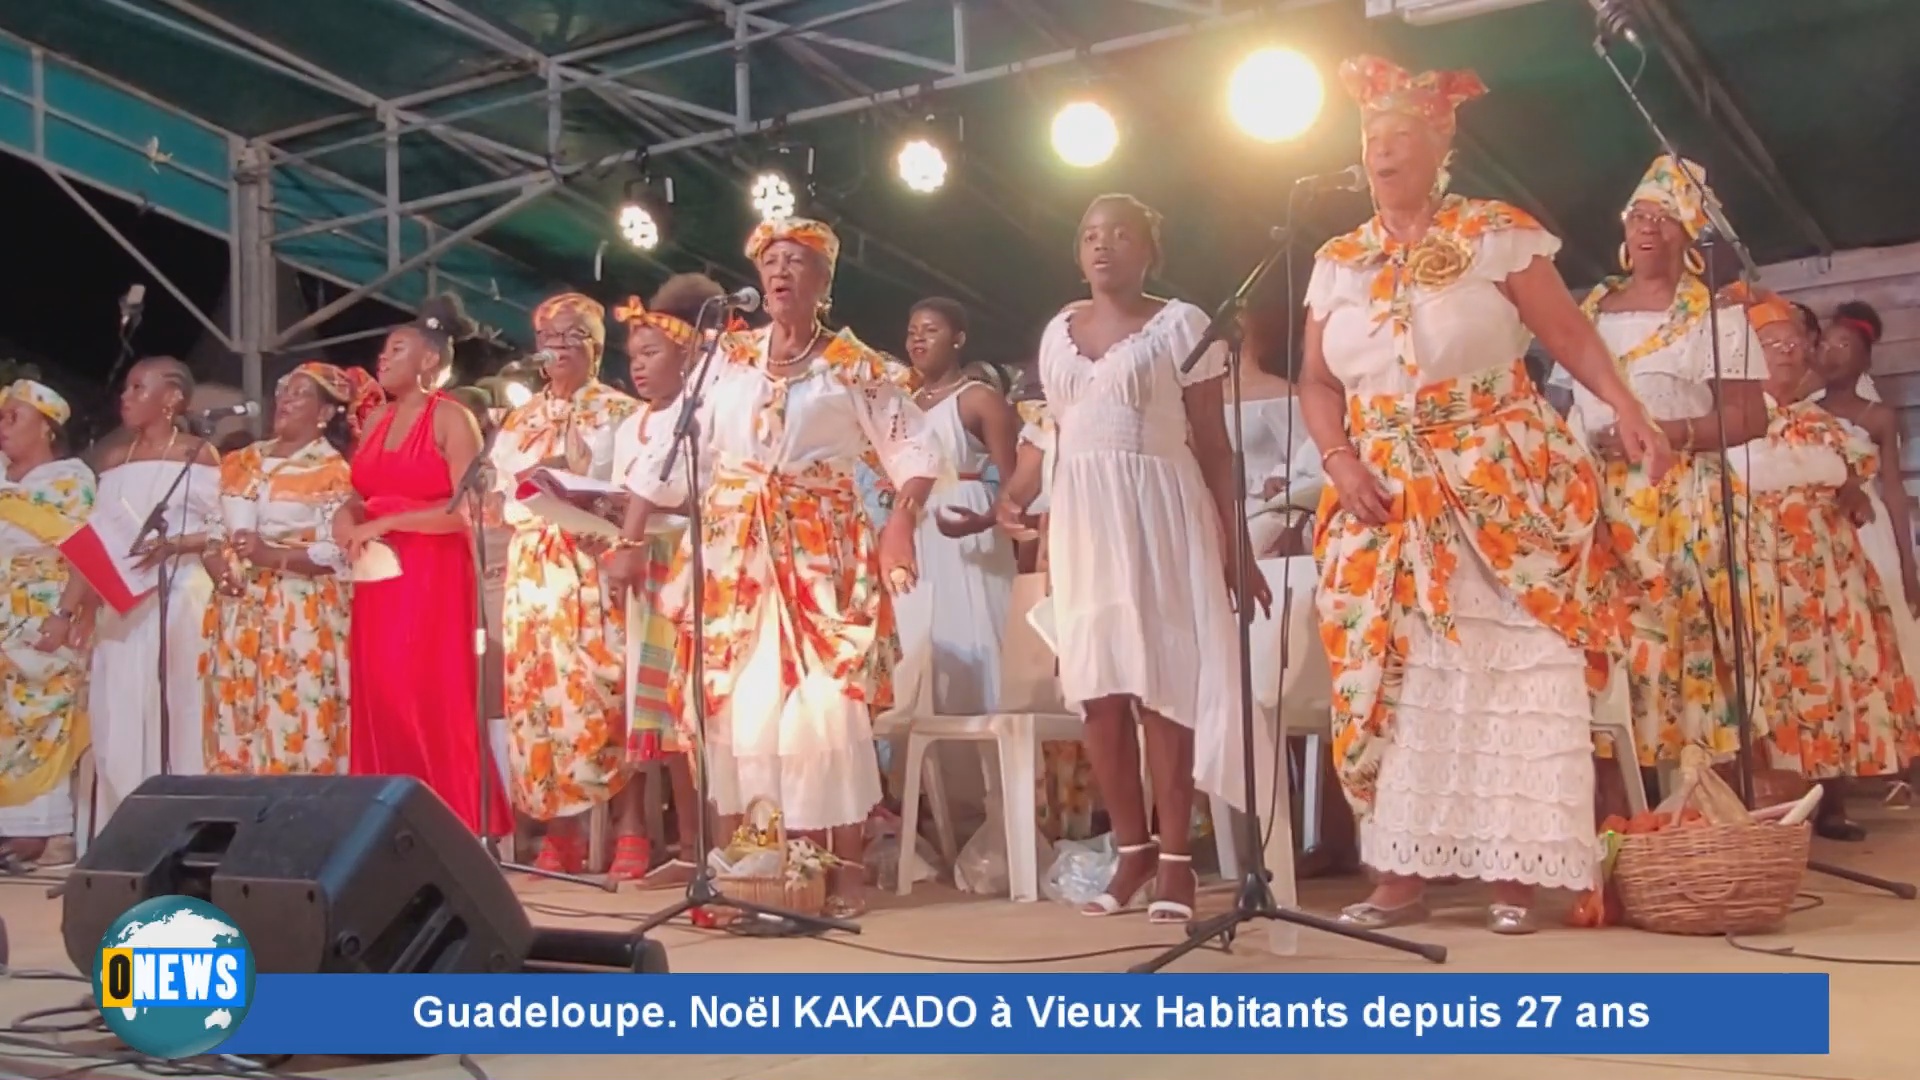 [Vidéo] Onews Guadeloupe. Noël KaKado. Une tradition depuis 27 ans à Vieux Habitants